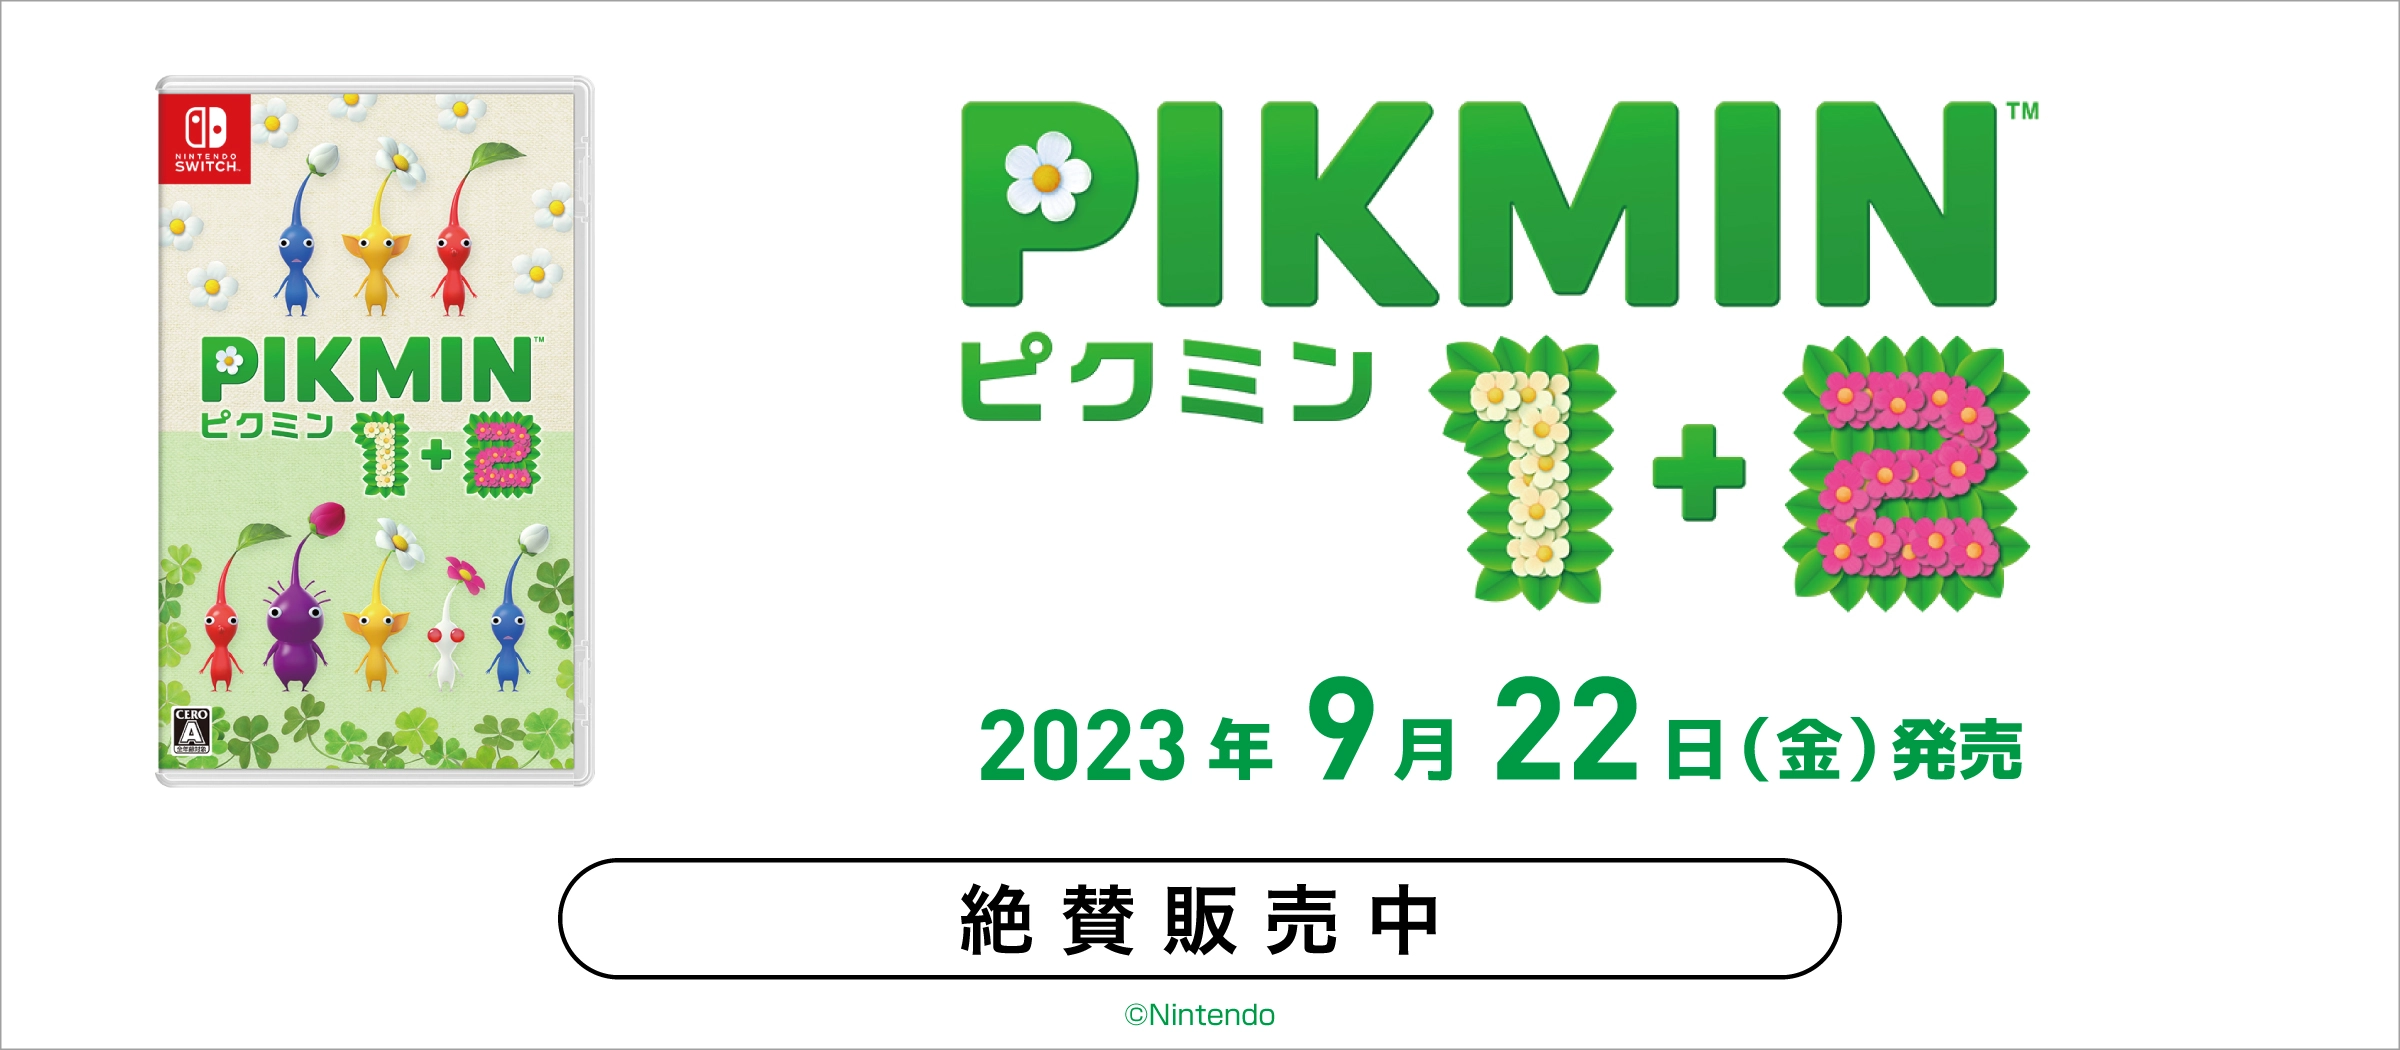 ふるいちオンライン - 【絶賛販売中】Nintendo Switch『Pikmin 1+2』